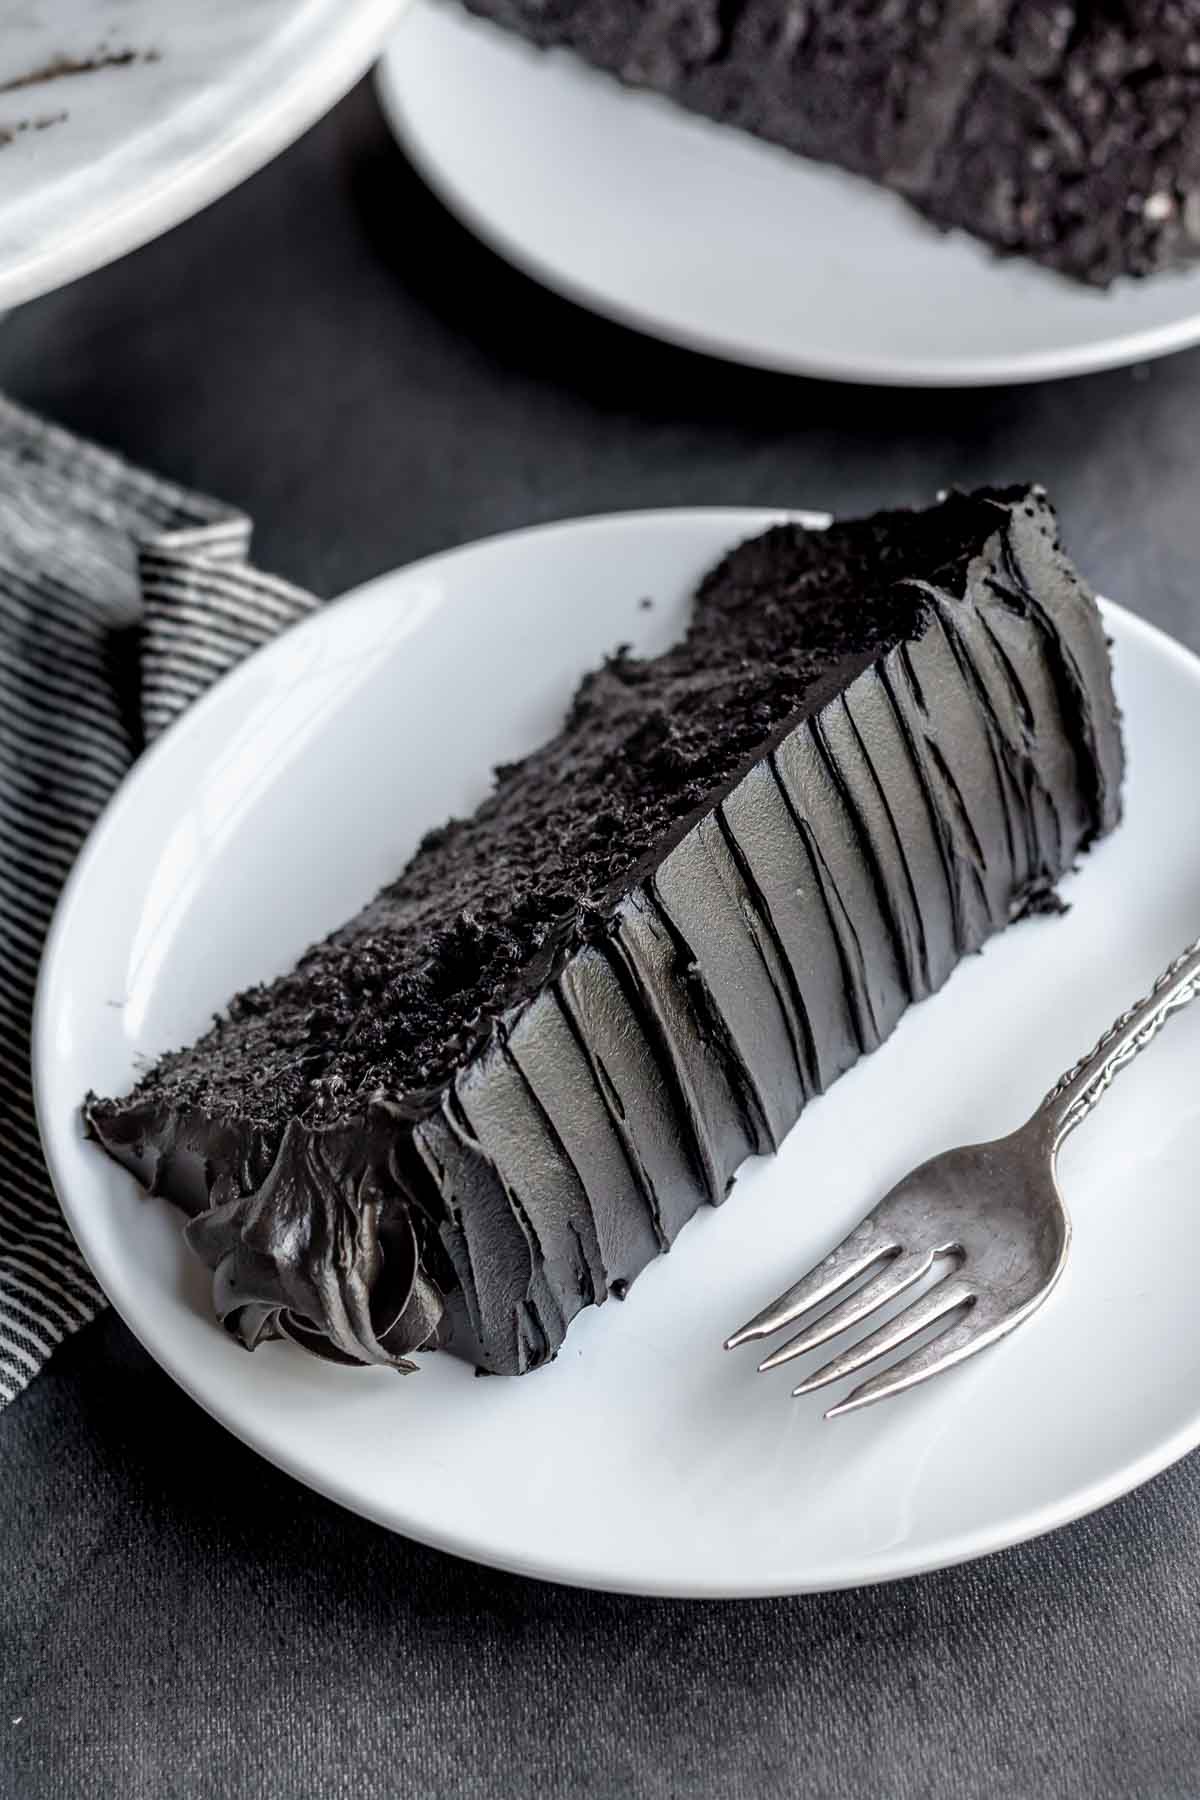 A slice of black velvet cake on a plate.